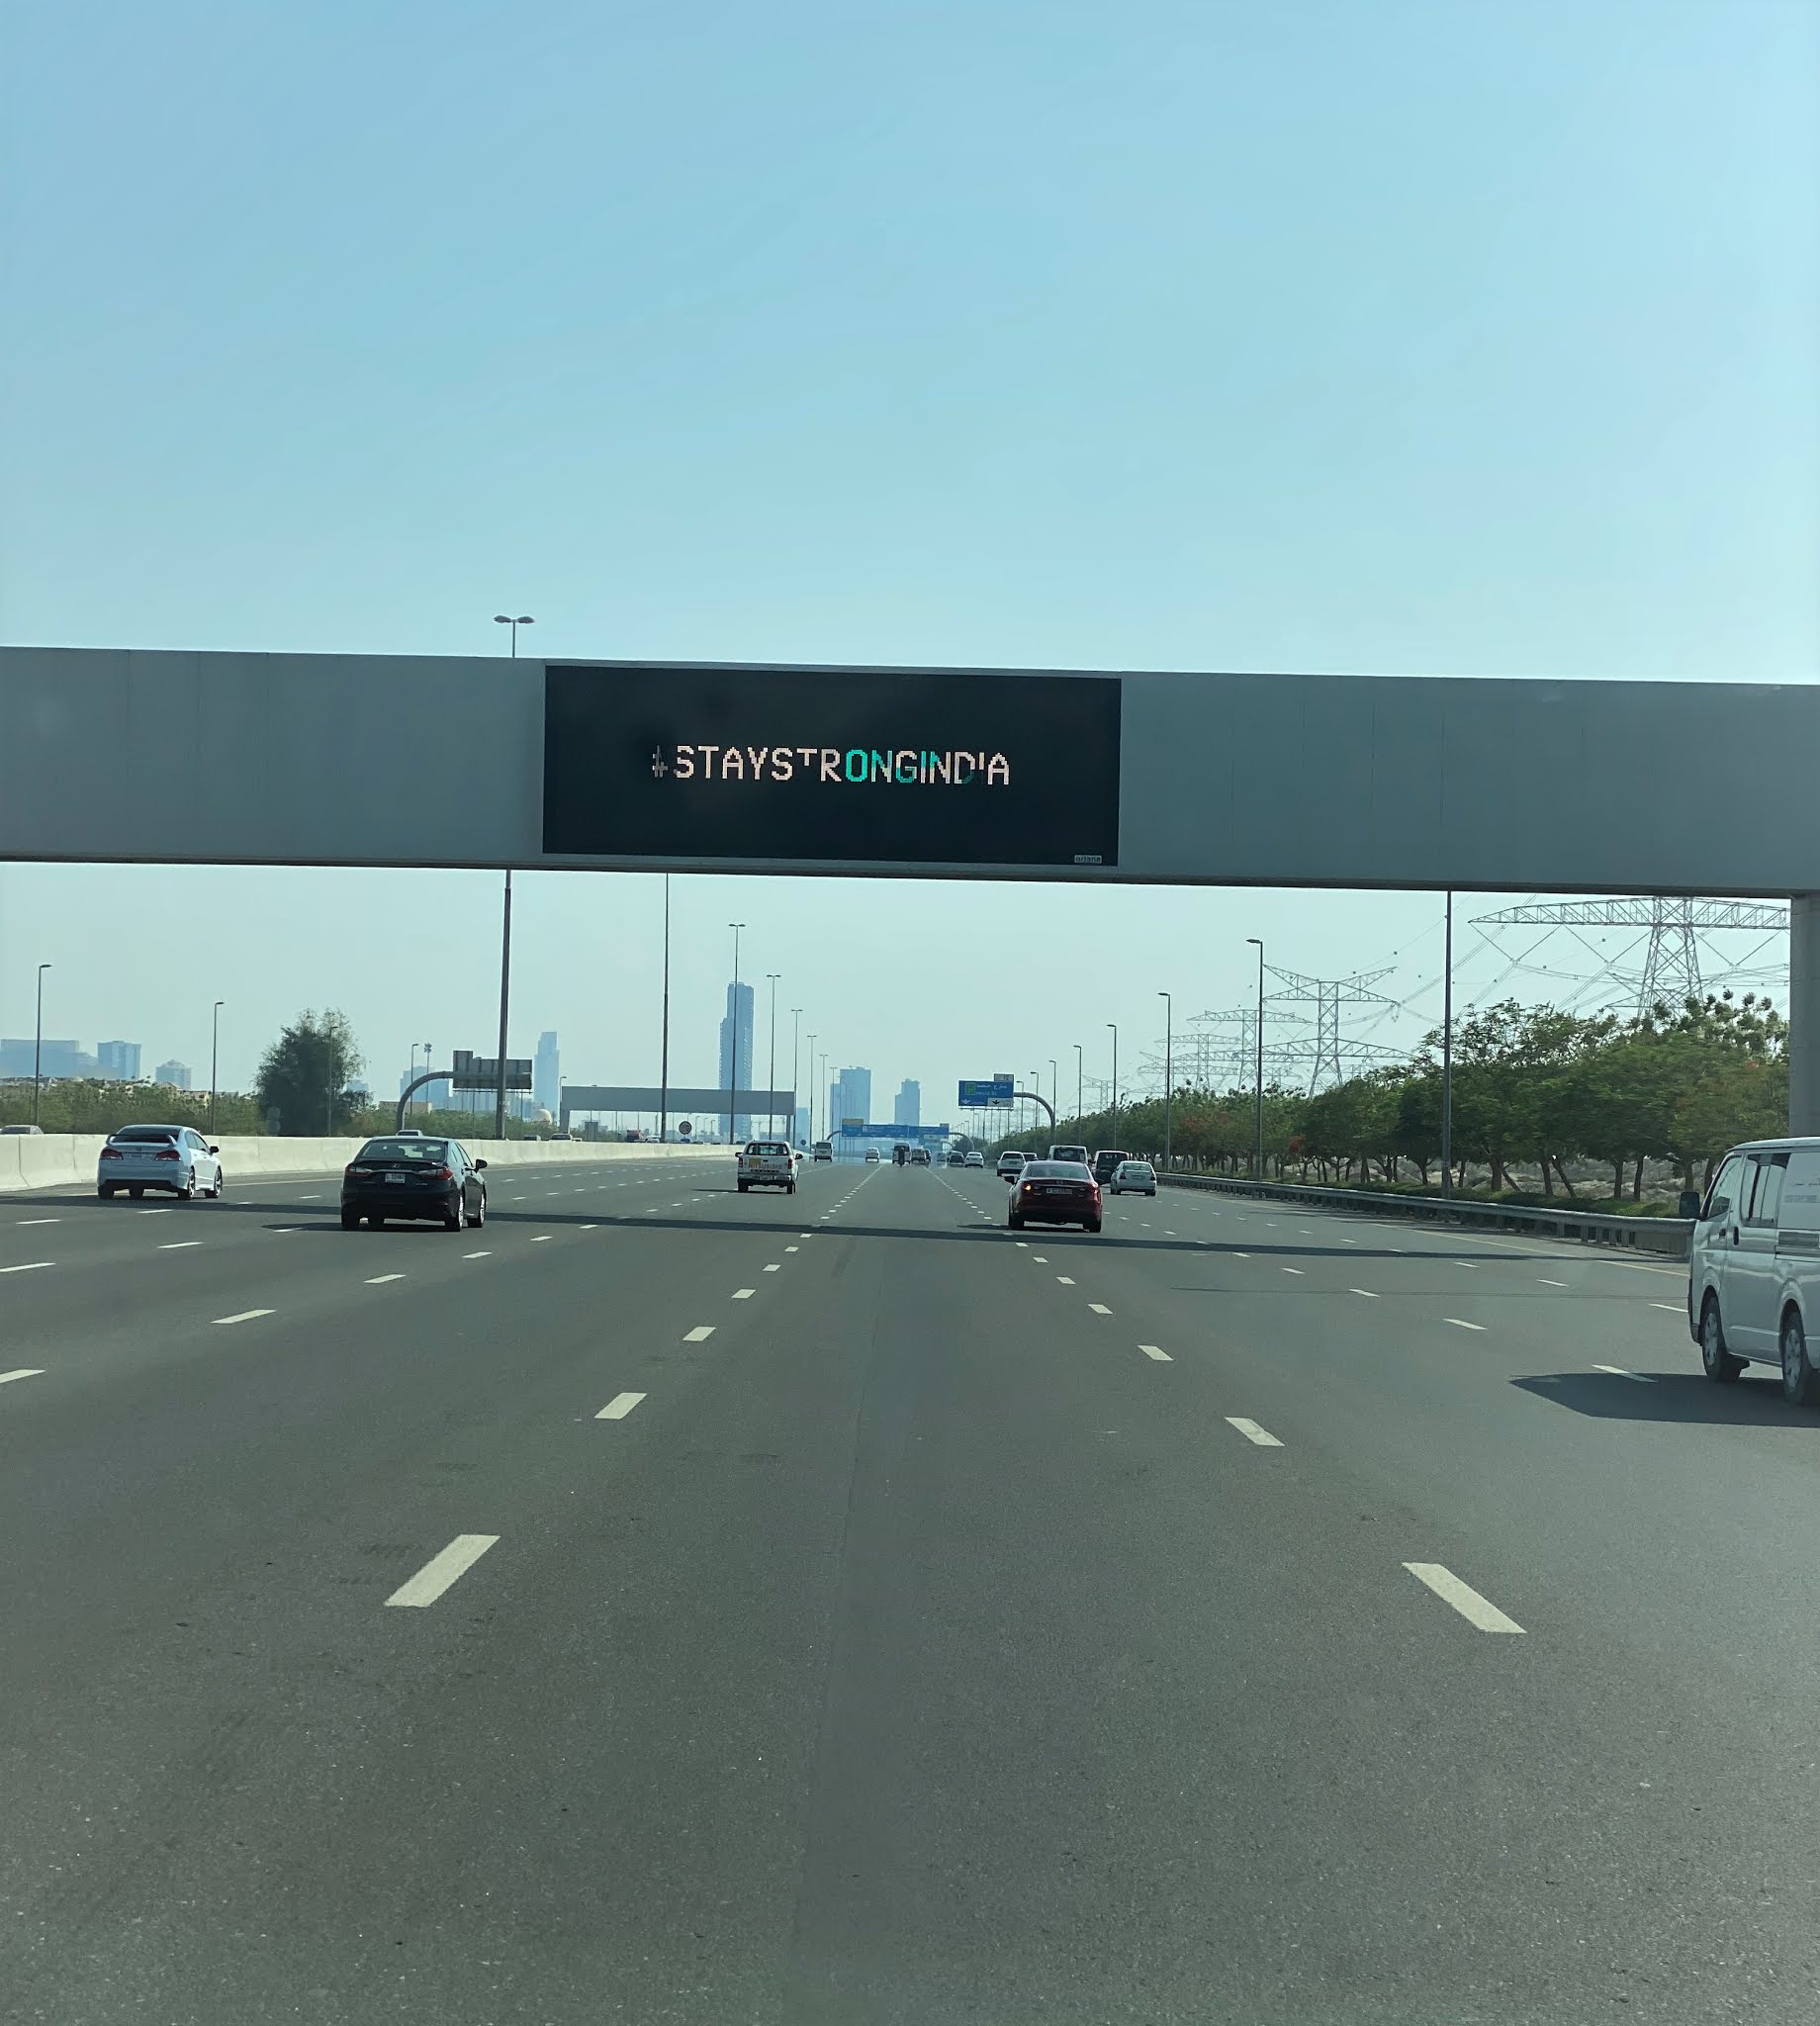 شوارع الإمارات تدعم الهند في مواجهة "كورونا" بحملة "ابق قوية"